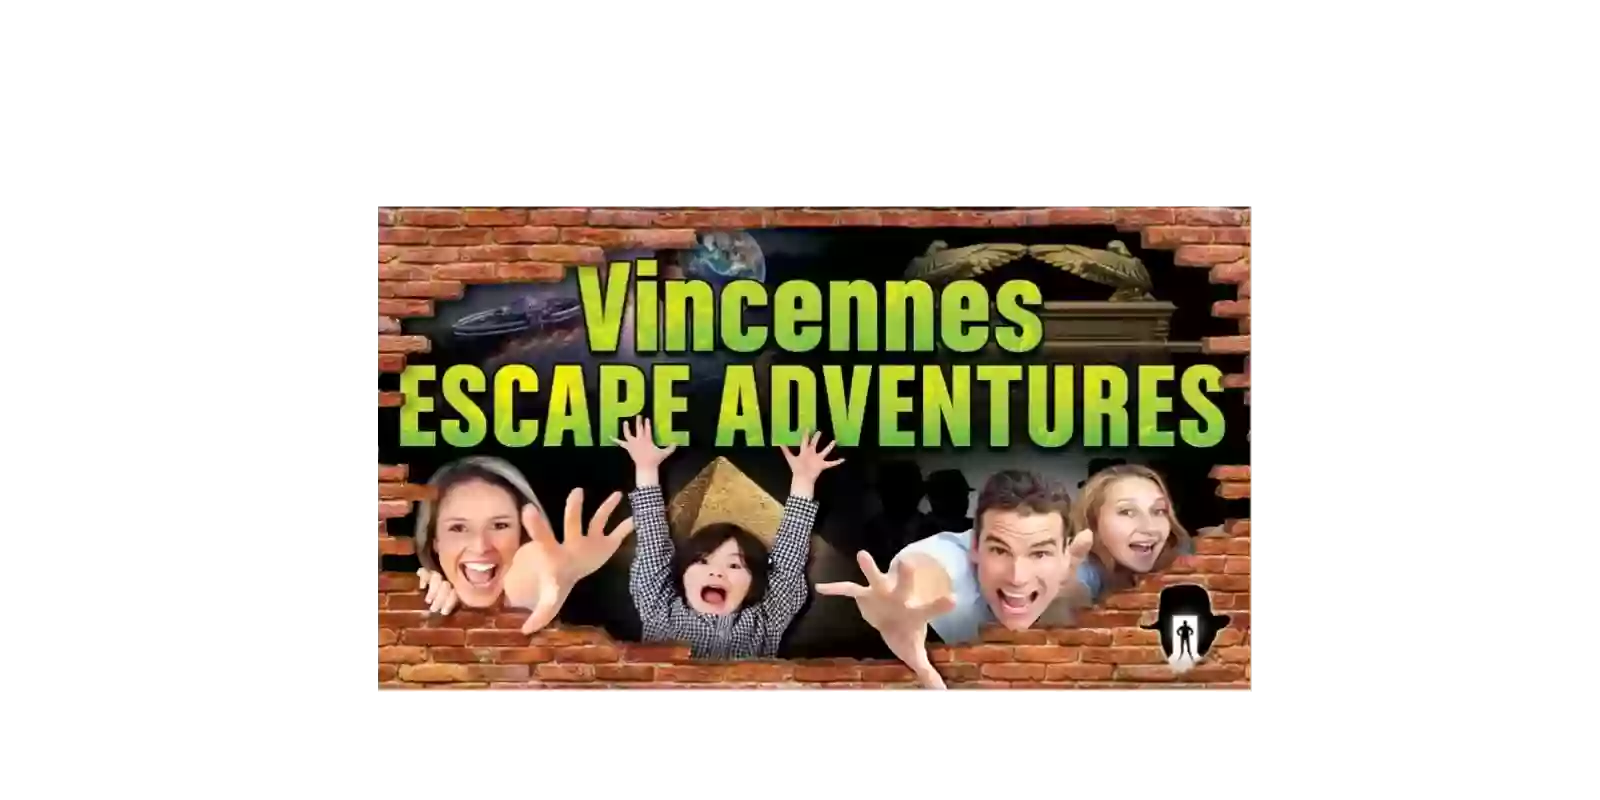 Vincennes Escape Adventures